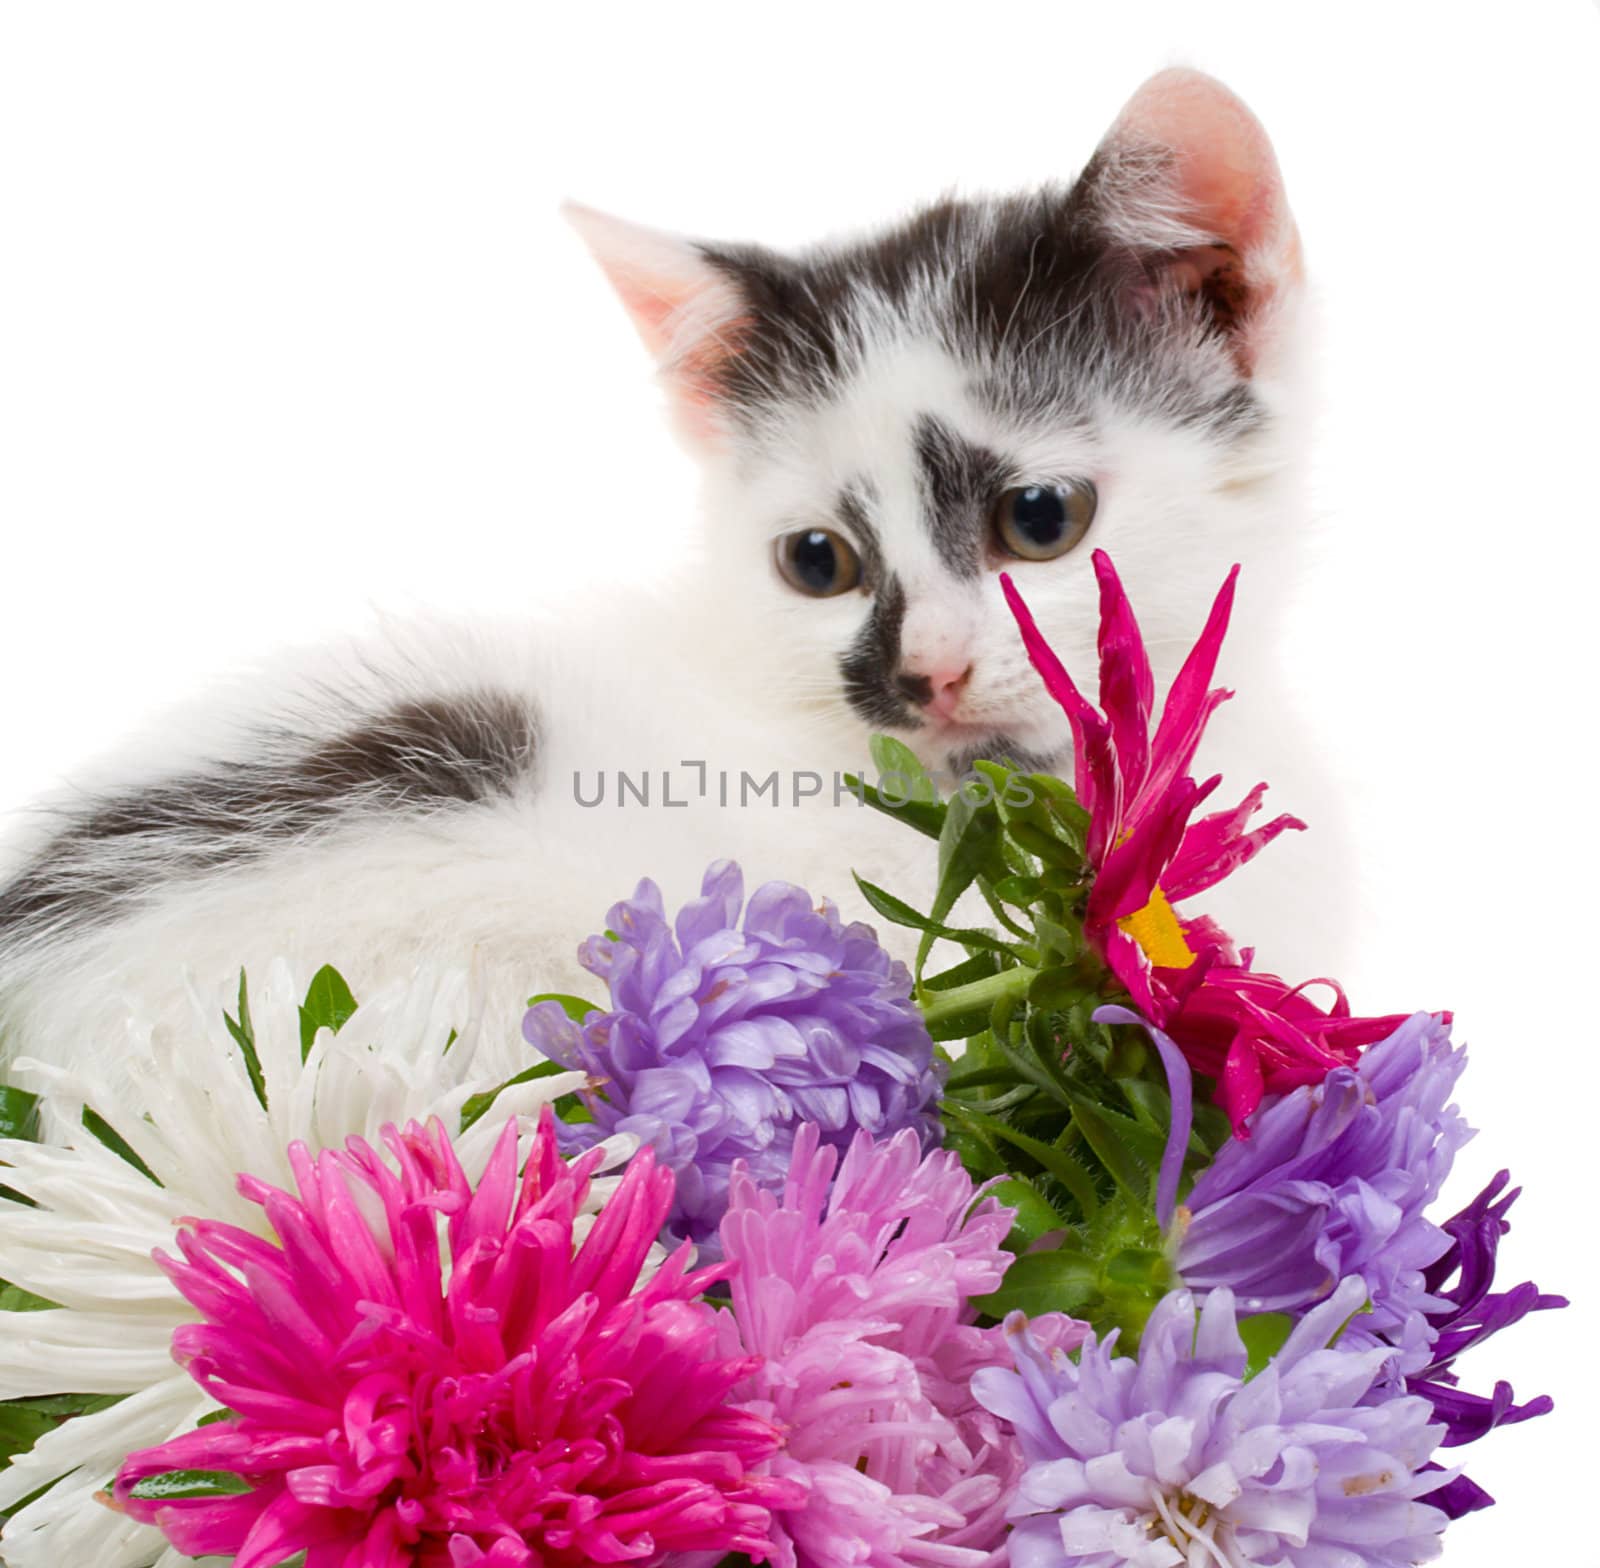 kitten sitting near flowers by Alekcey